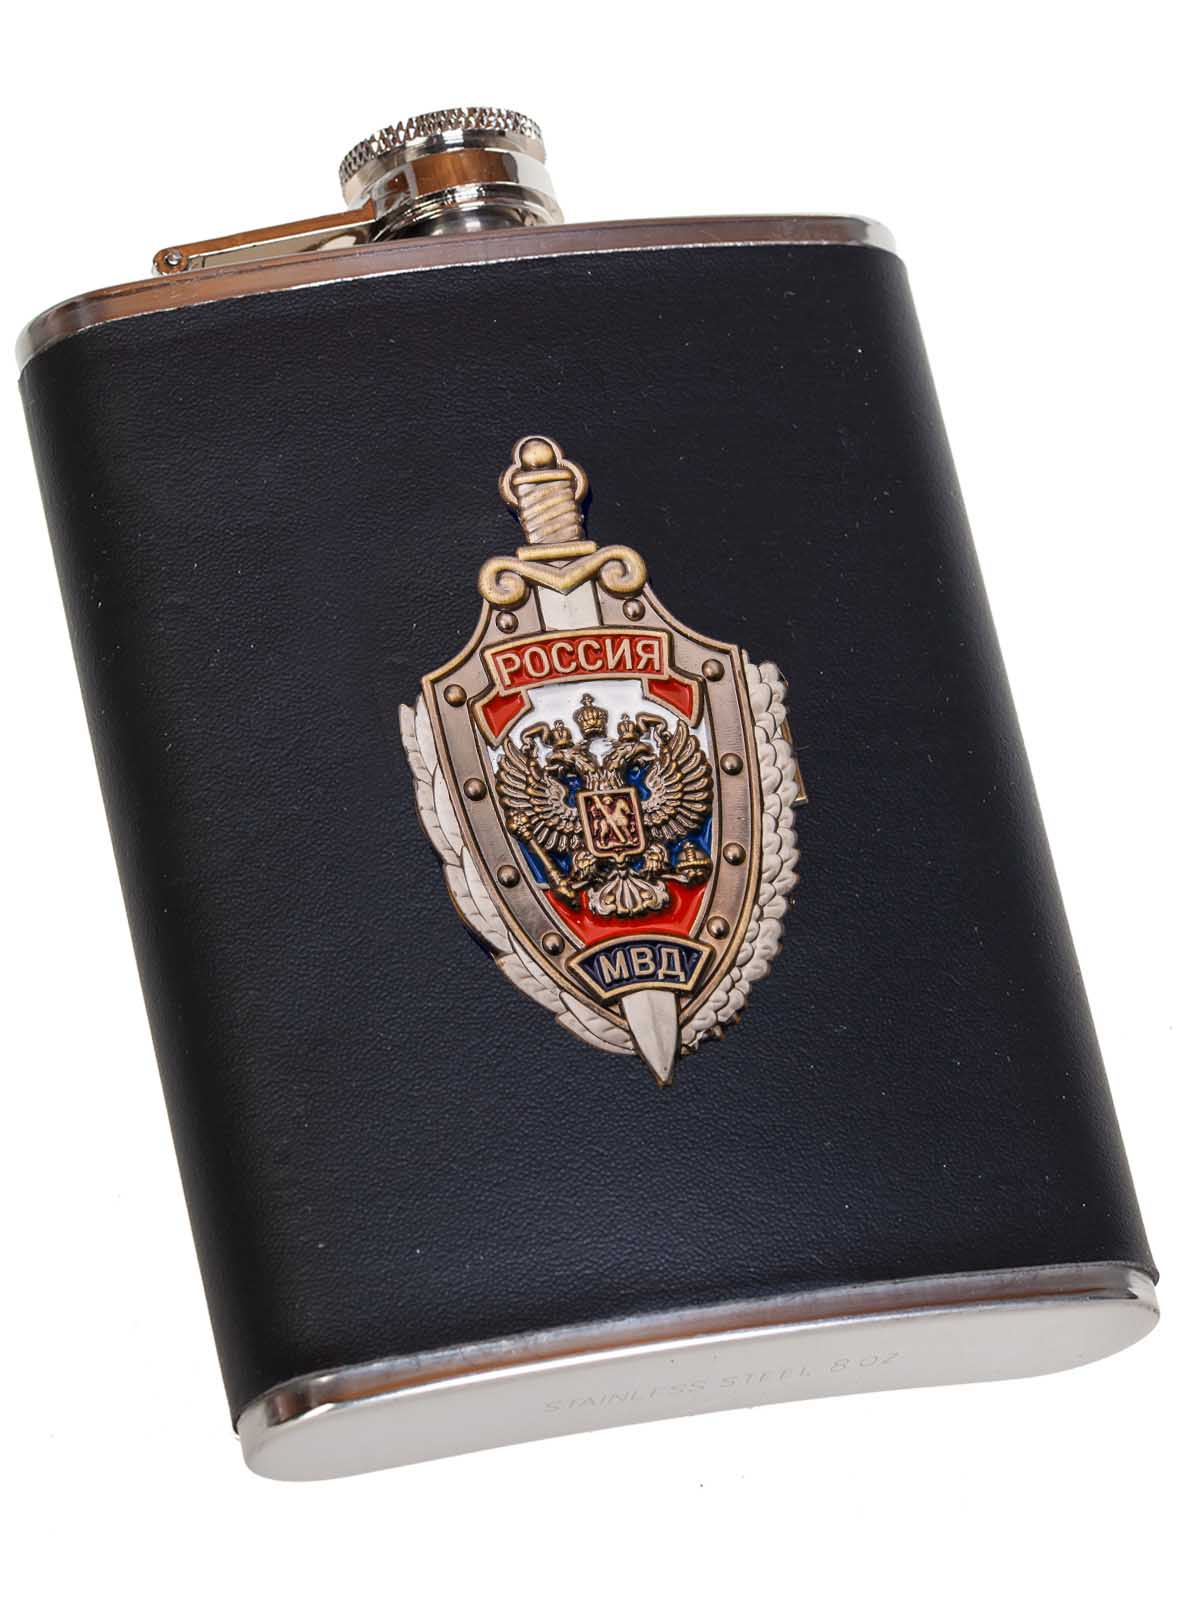 Классная подарочная фляжка сотруднику МВД России 